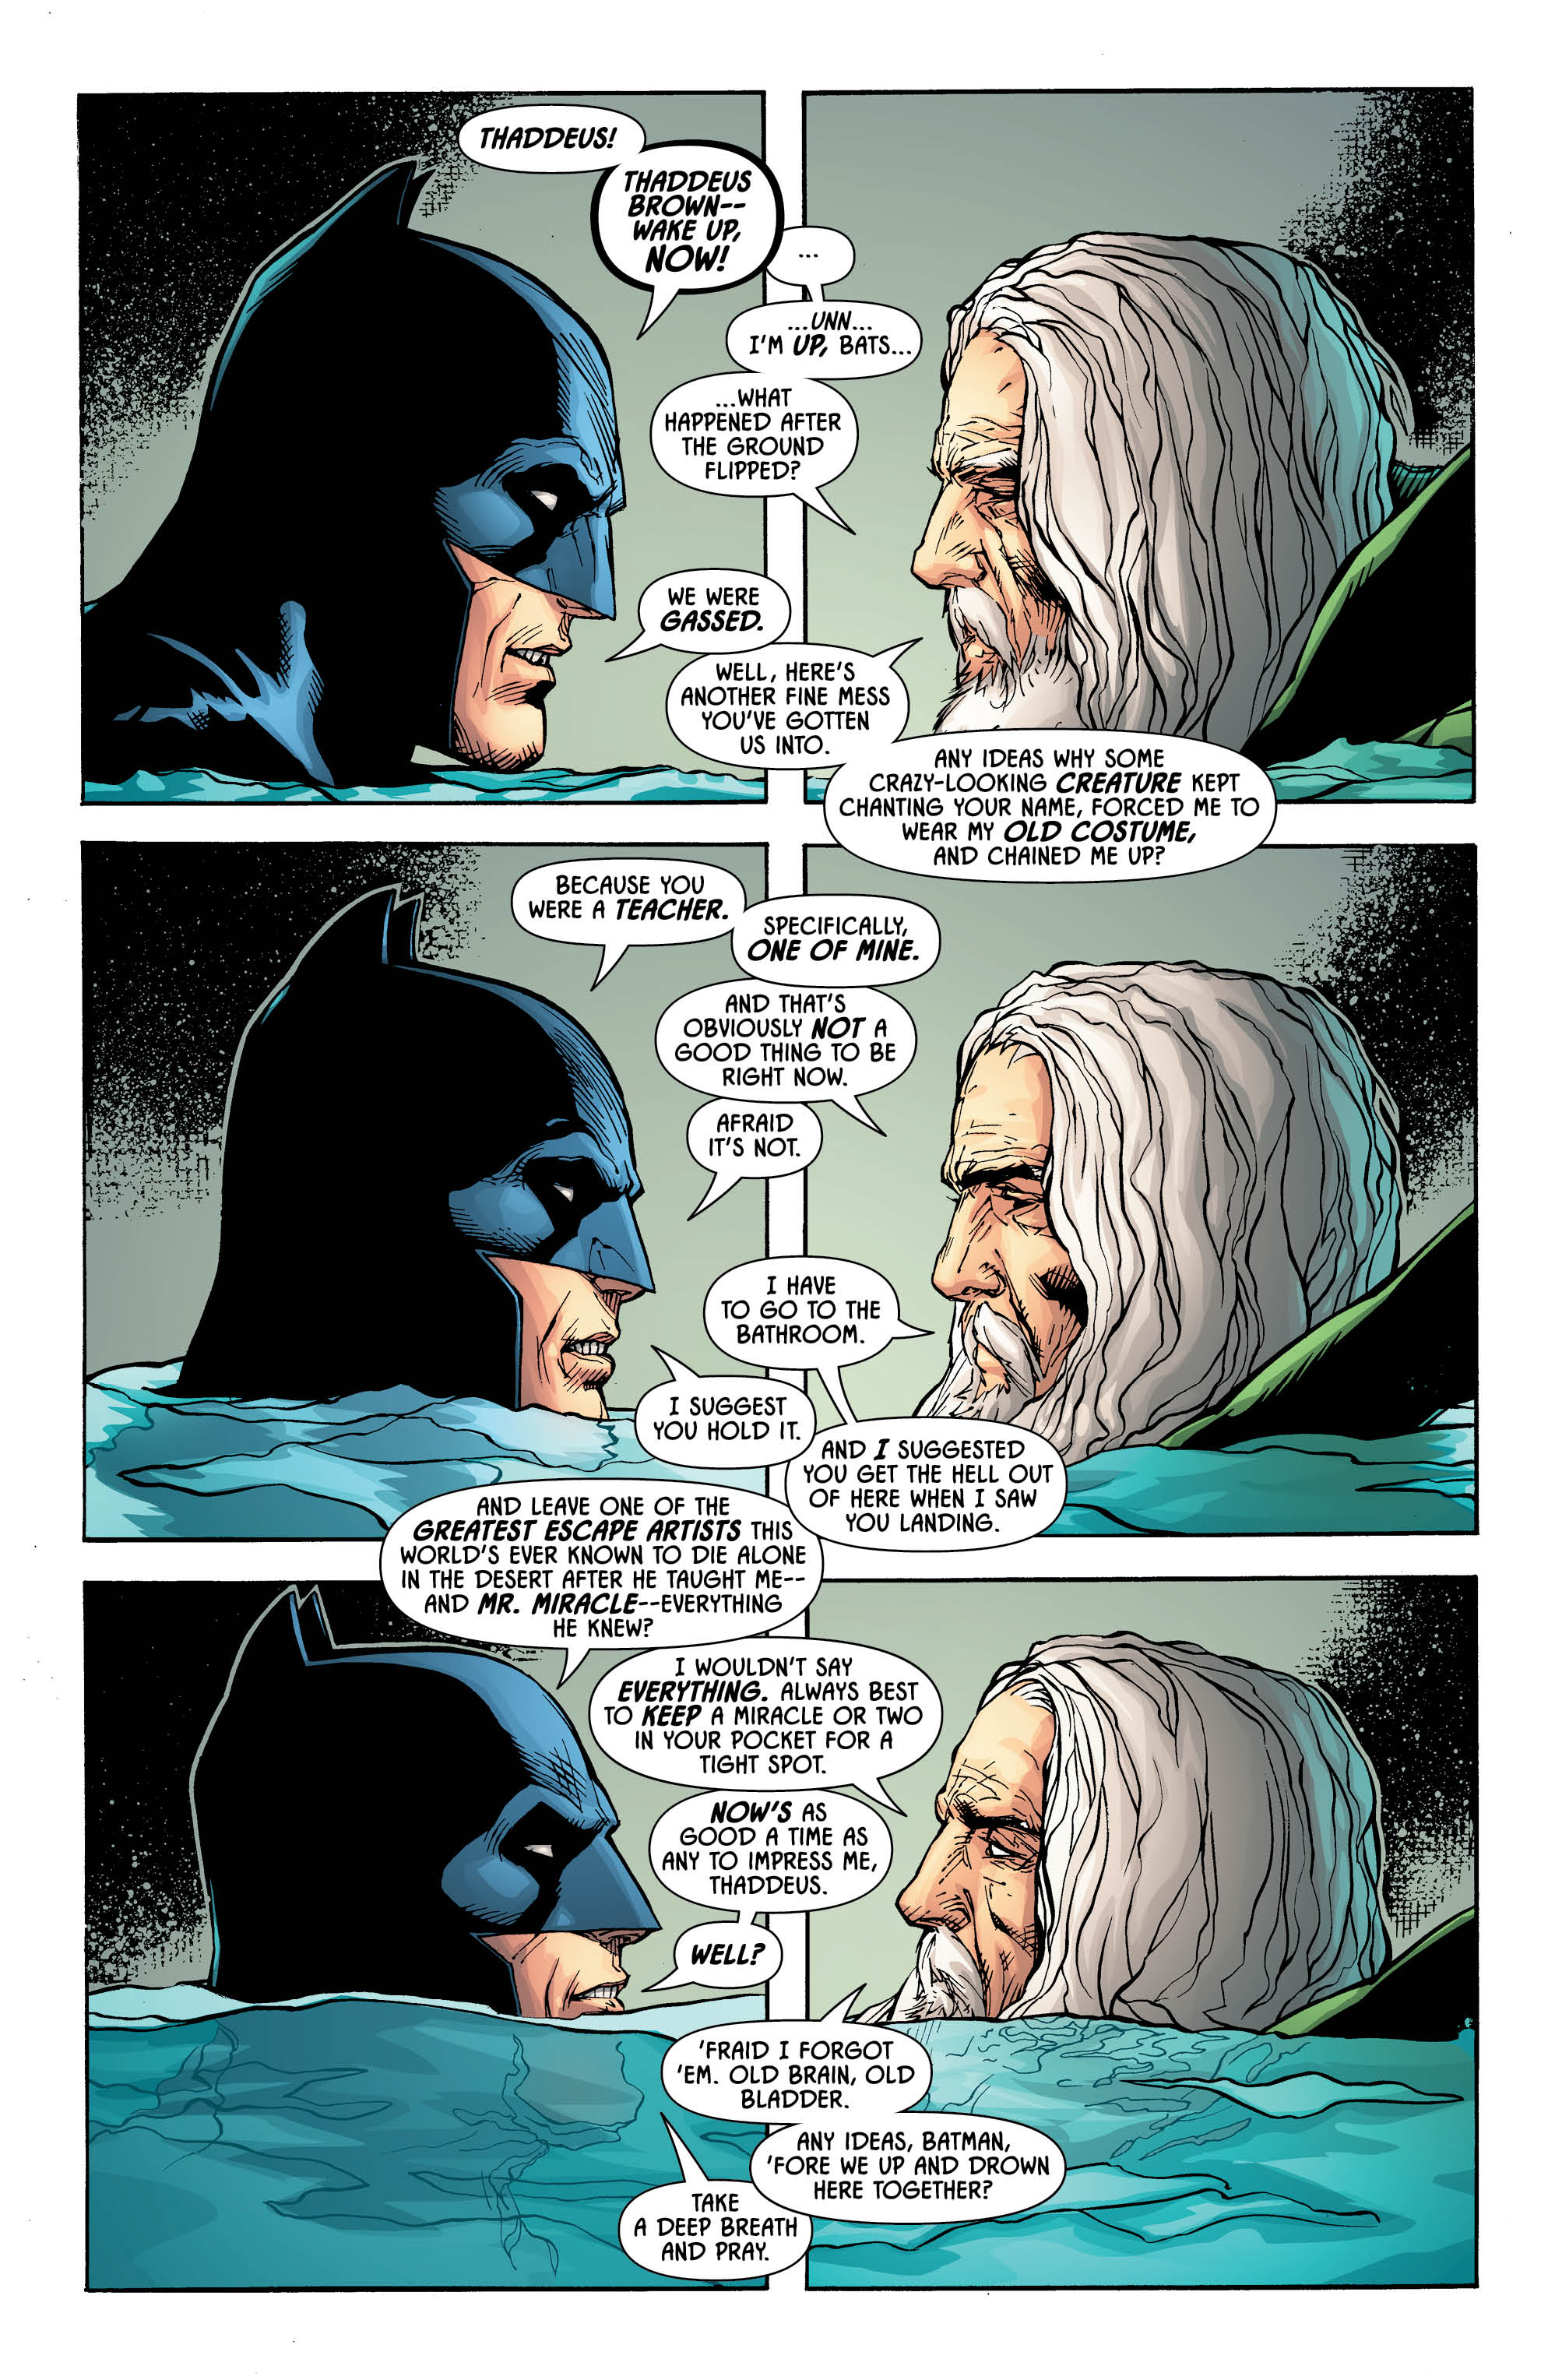 DC Batman mix1 Detective Comics # 997 